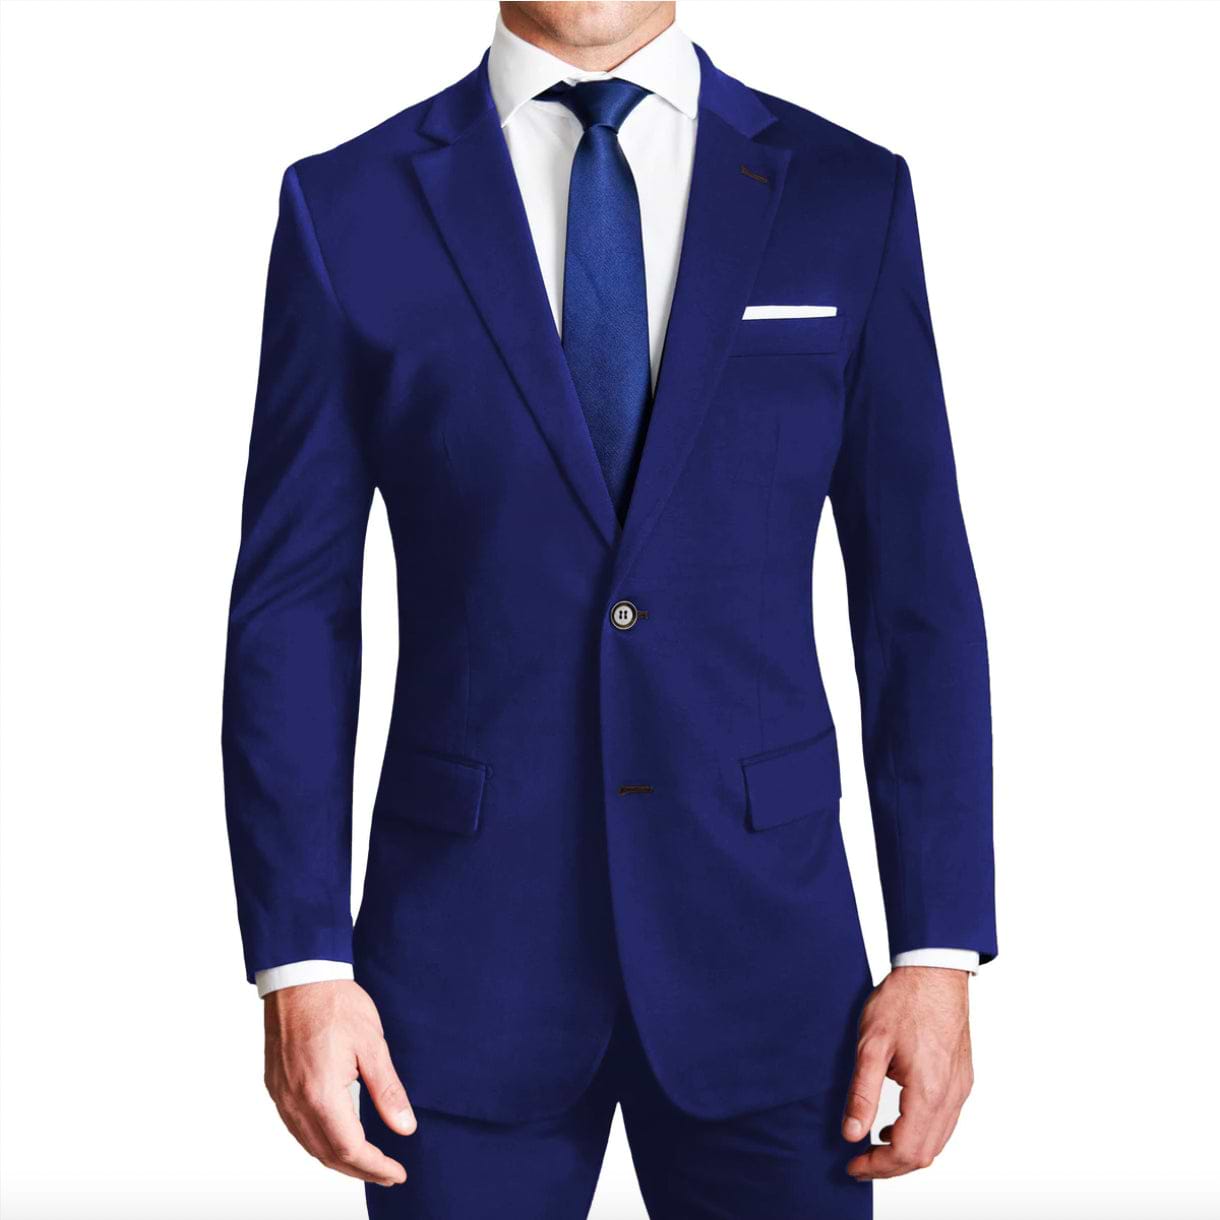 Men's Royal Blue Twill Weave 3 Piece Slim Fit Suit